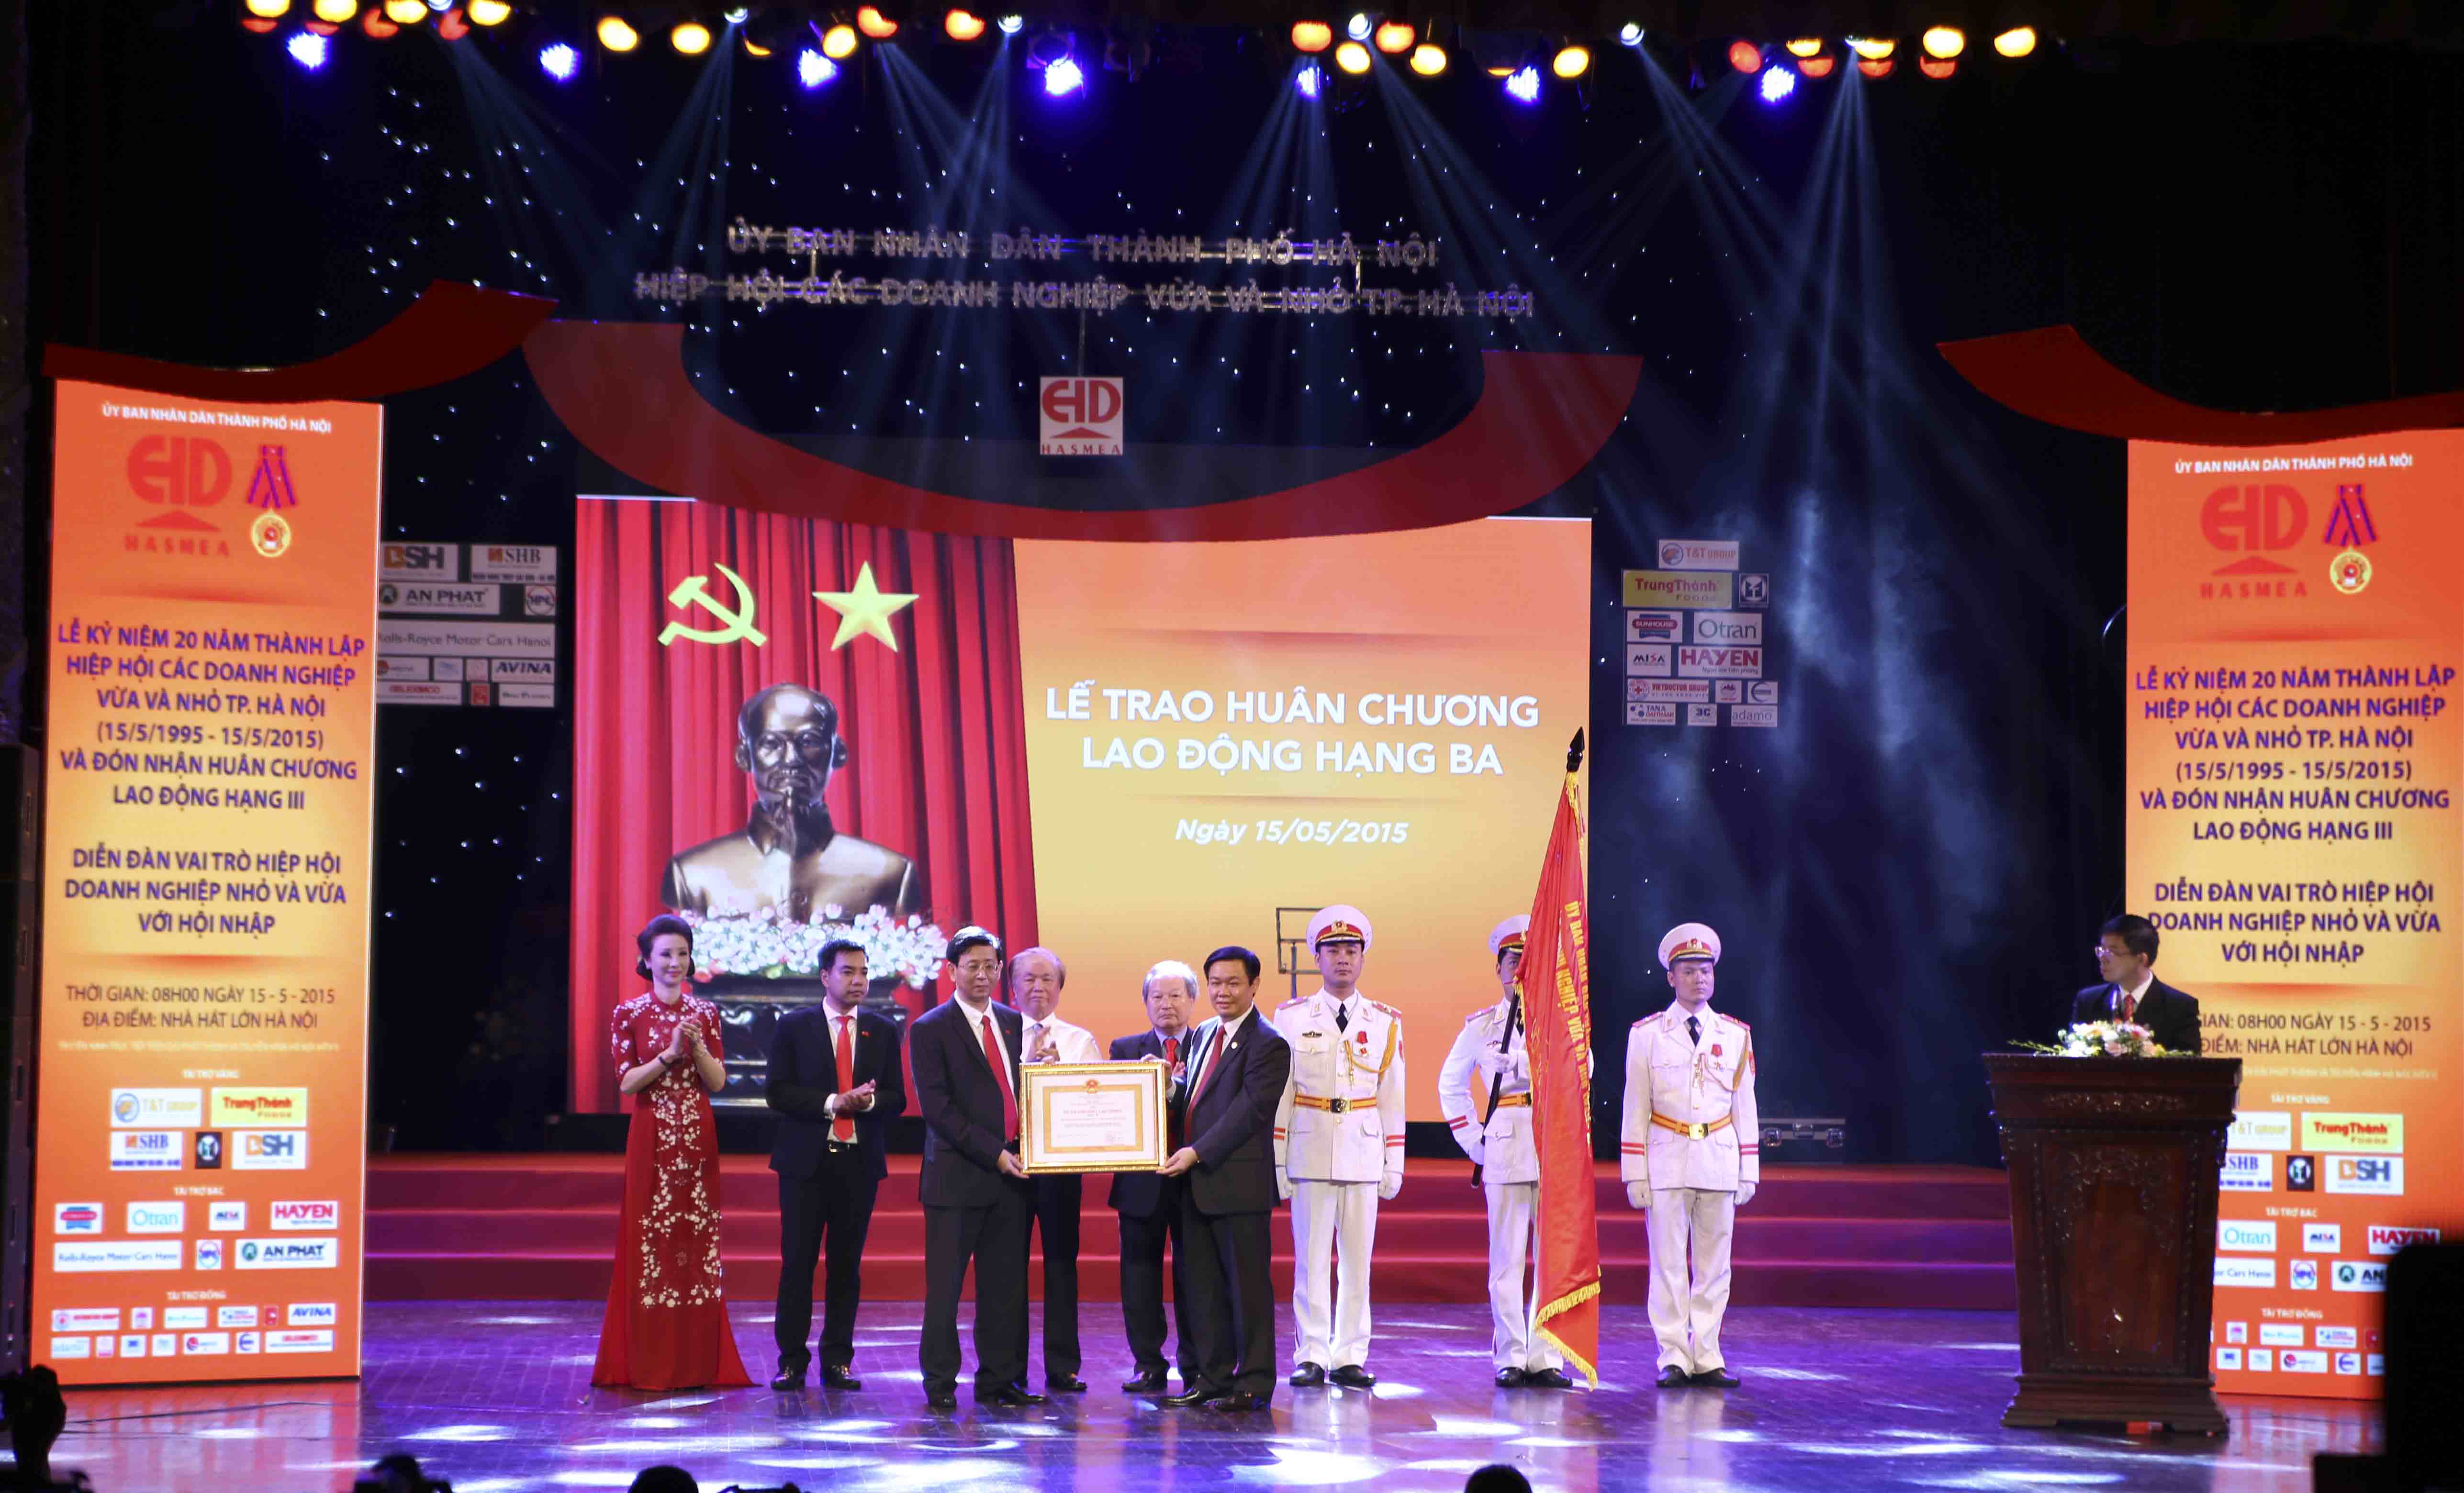 Tập đoàn Sunhouse chúc mừng Hiệp hội các Doanh nghiệp vừa và nhỏ Thành phố Hà Nội kỷ niệm 20 năm thành lập và đón nhận Huân chương Lao động hạng III